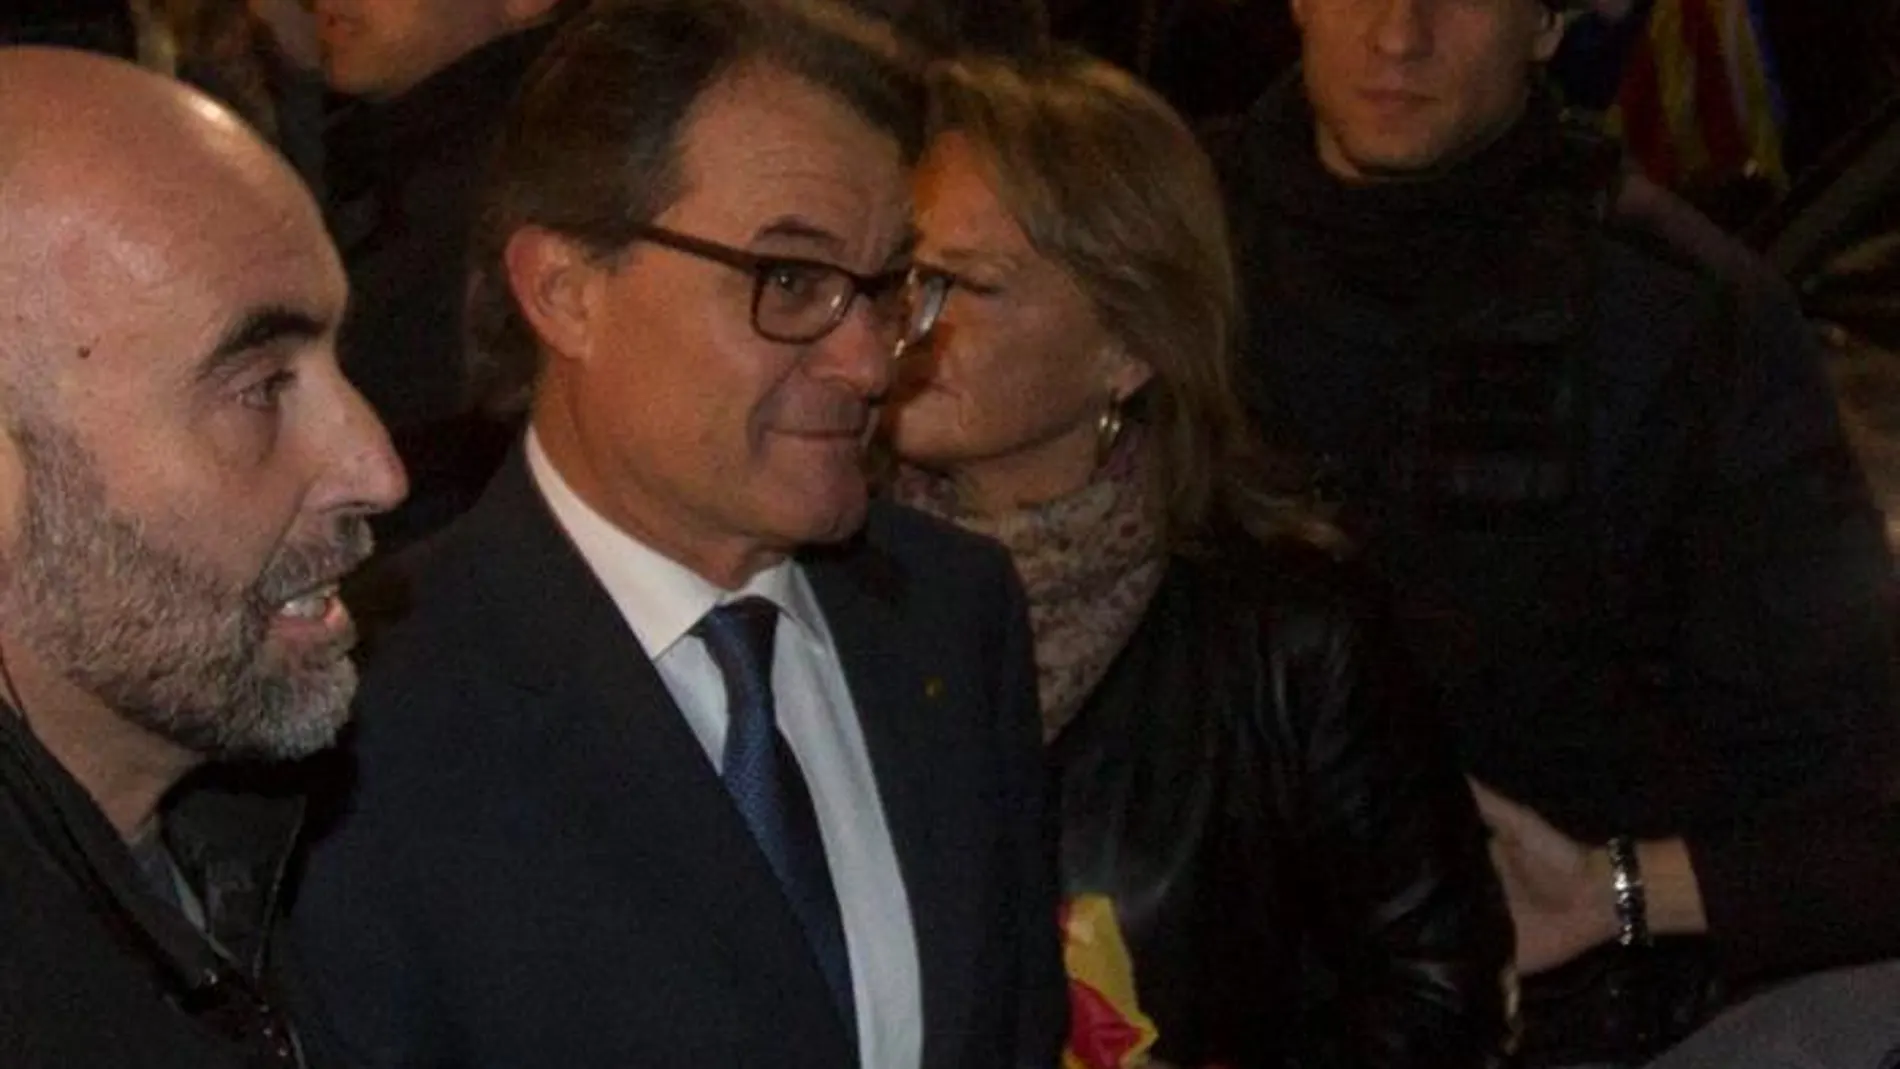 El presidente de la Generalitat en funciones Artur Mas y su esposa Helena Rakosnic abandonan el Palau de la Generalitat